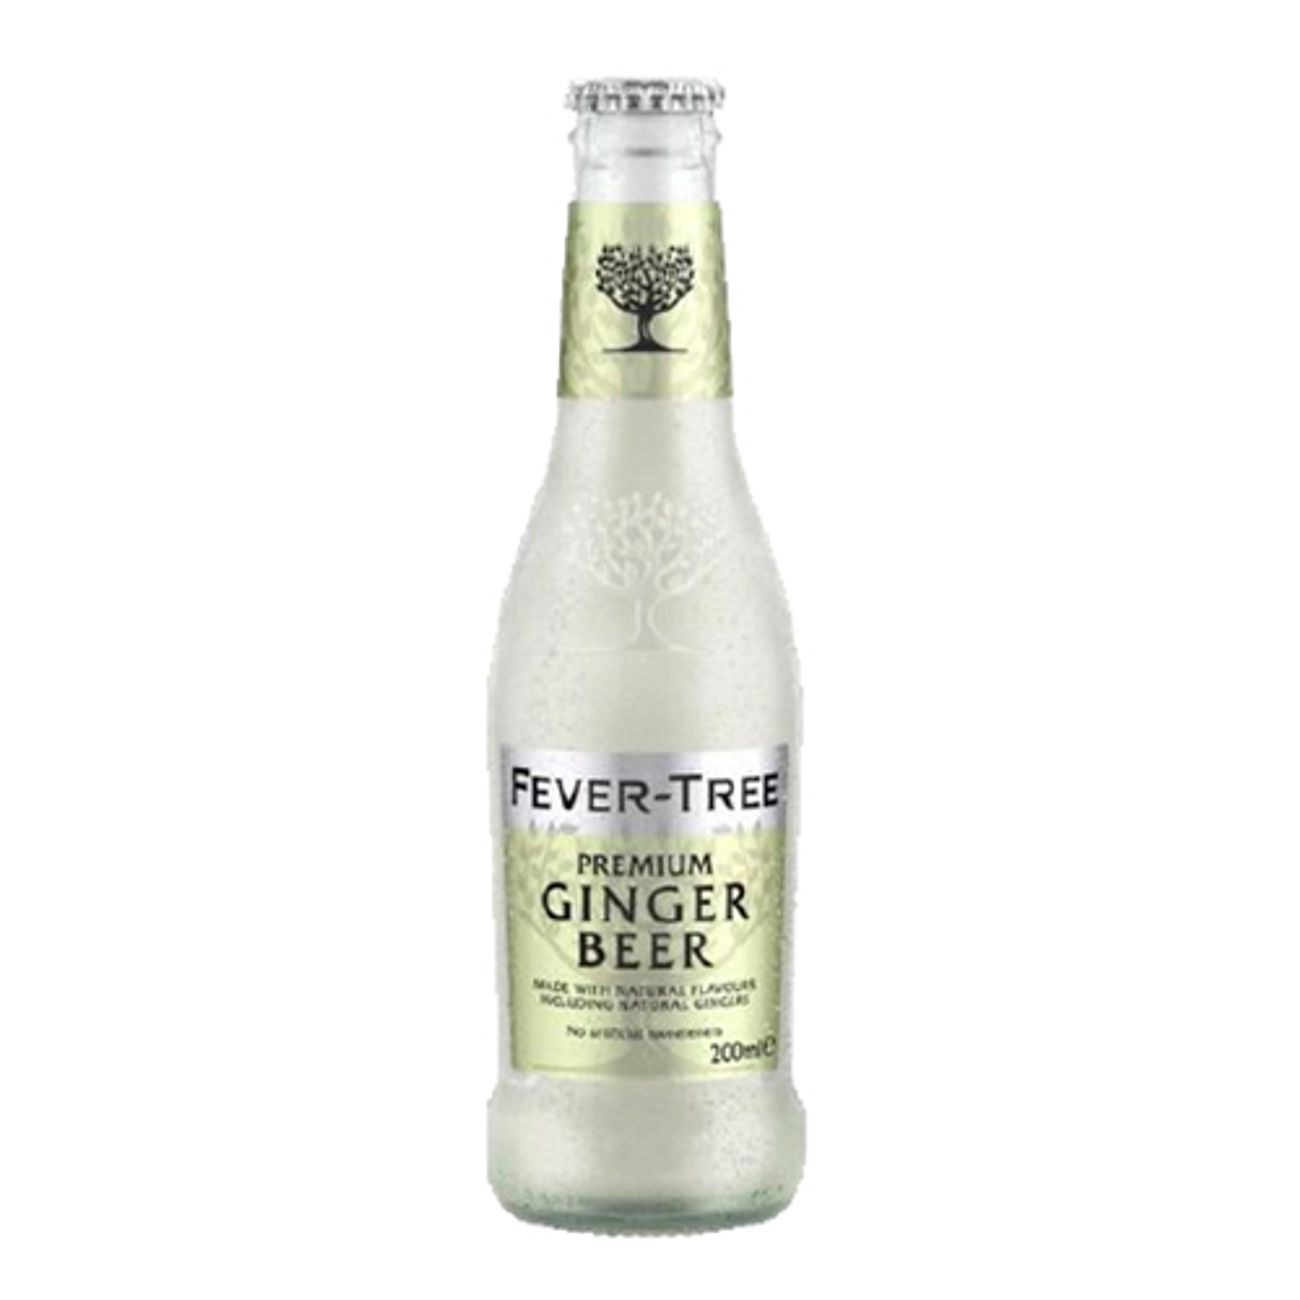 fever-tree-premium-ginger-beer-73235-1